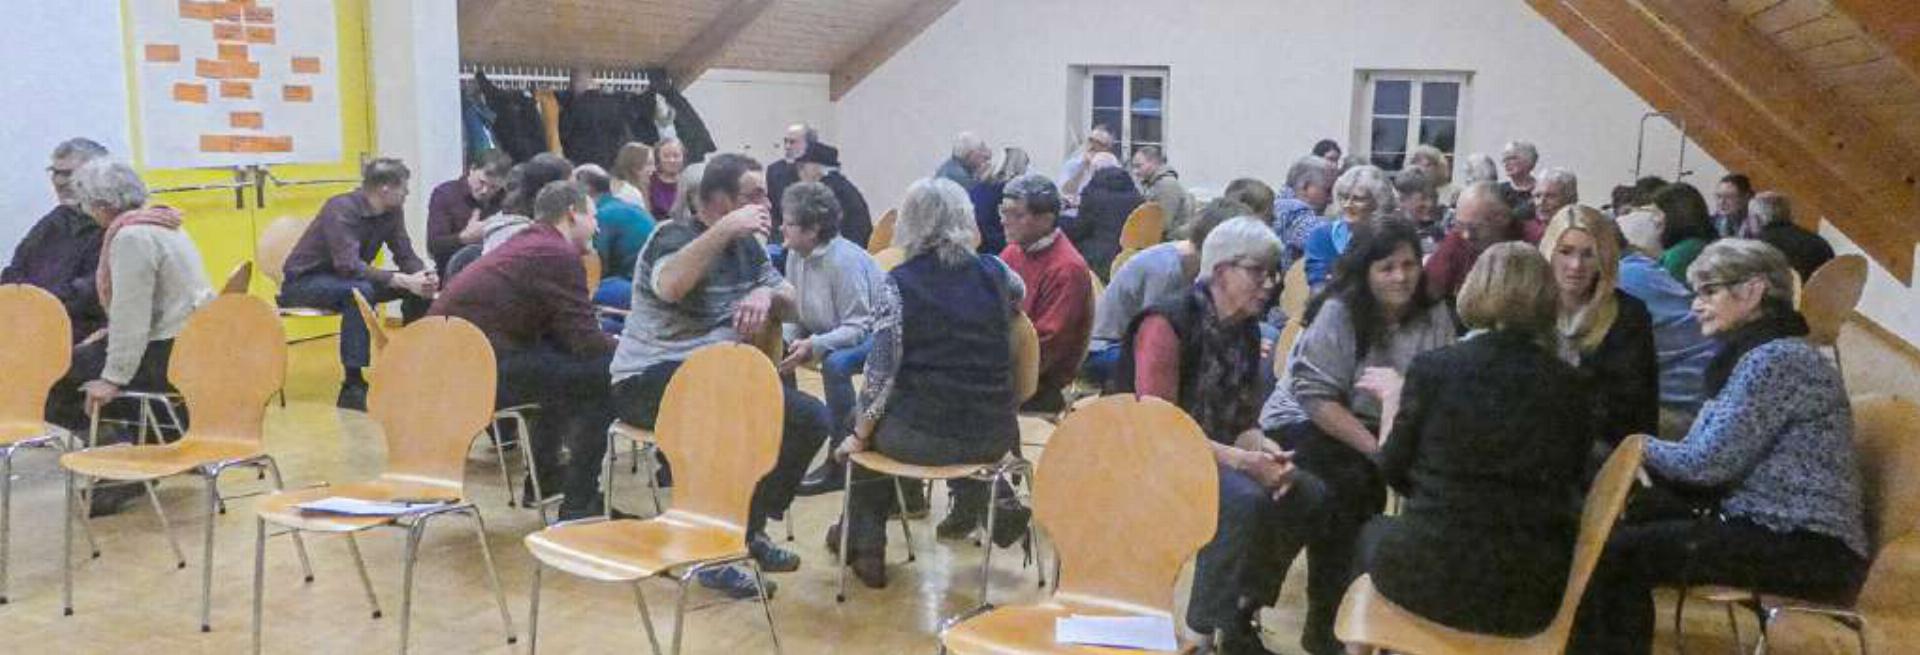 Rund 50 Personen diskutierten über die Zukunft der Kirche und der Kirchgemeinde Diegten-Eptingen. Bild Paul Aenishänslin